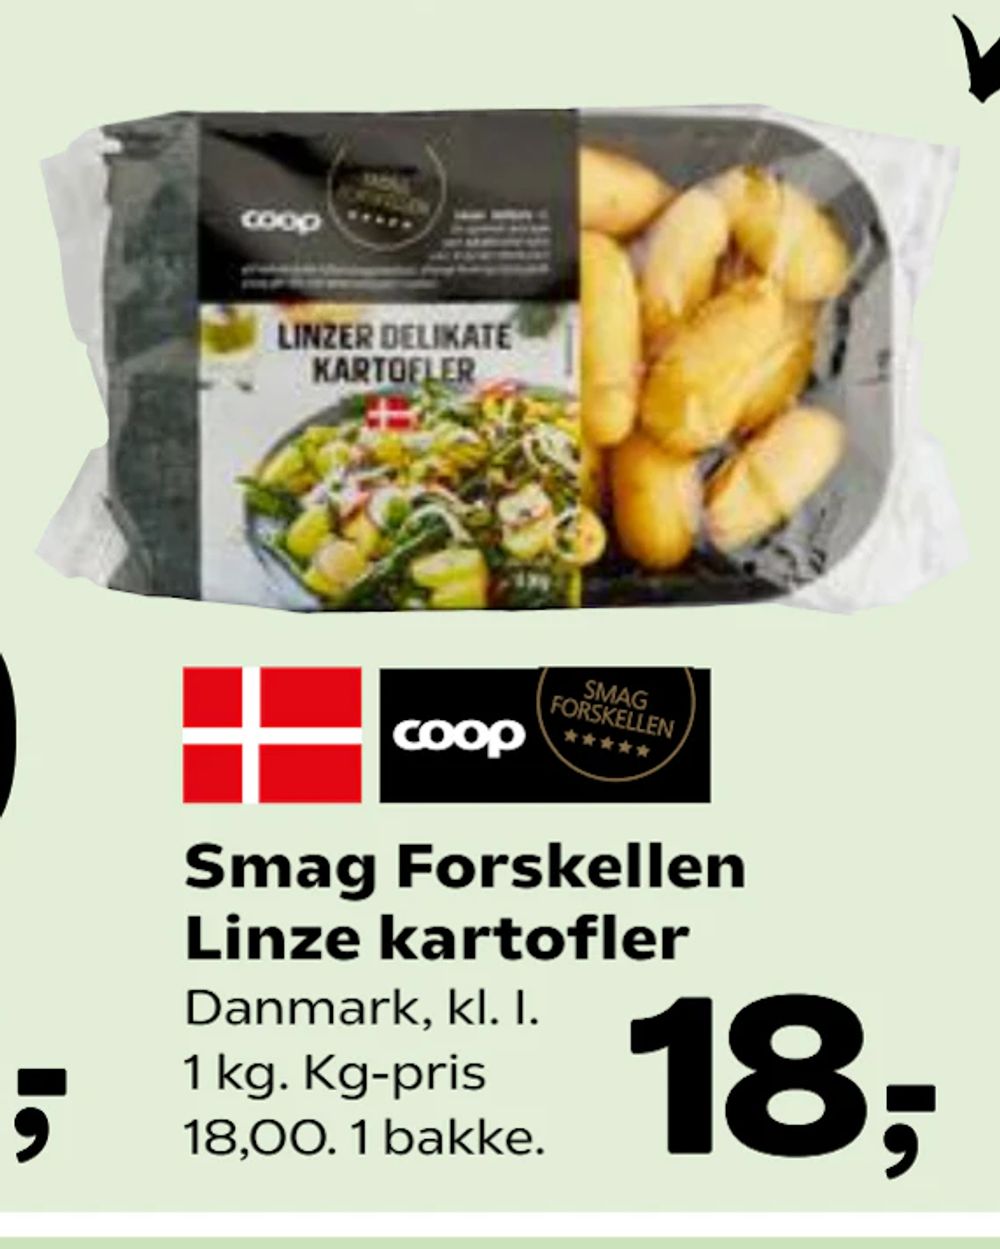 Tilbud på Smag Forskellen Linze kartofler fra SuperBrugsen til 18 kr.